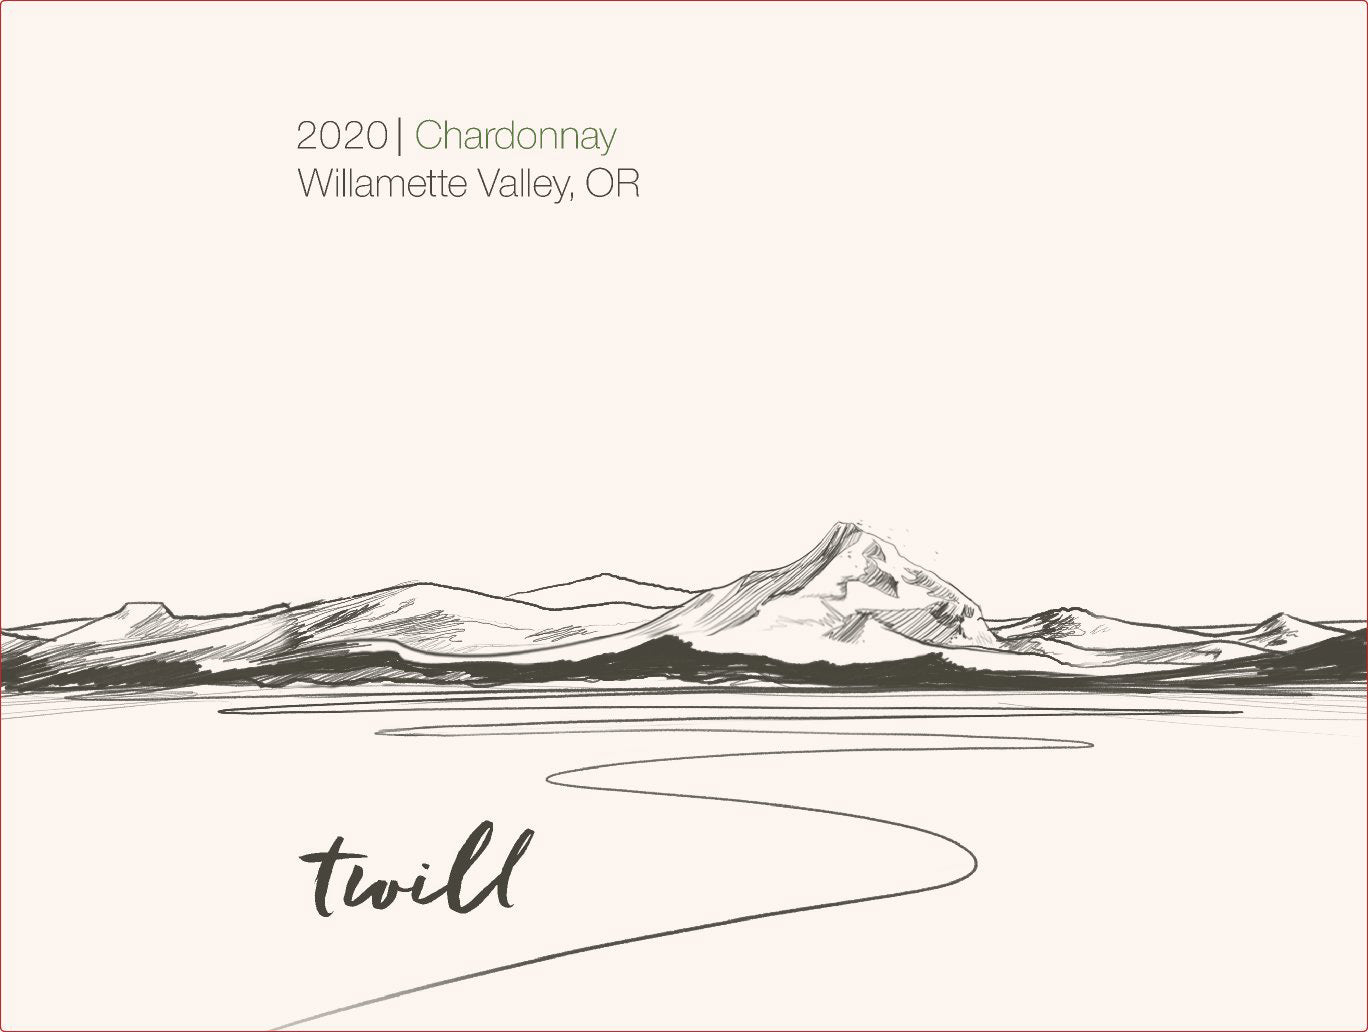 Twill Willamette Valley Chardonnay 2020